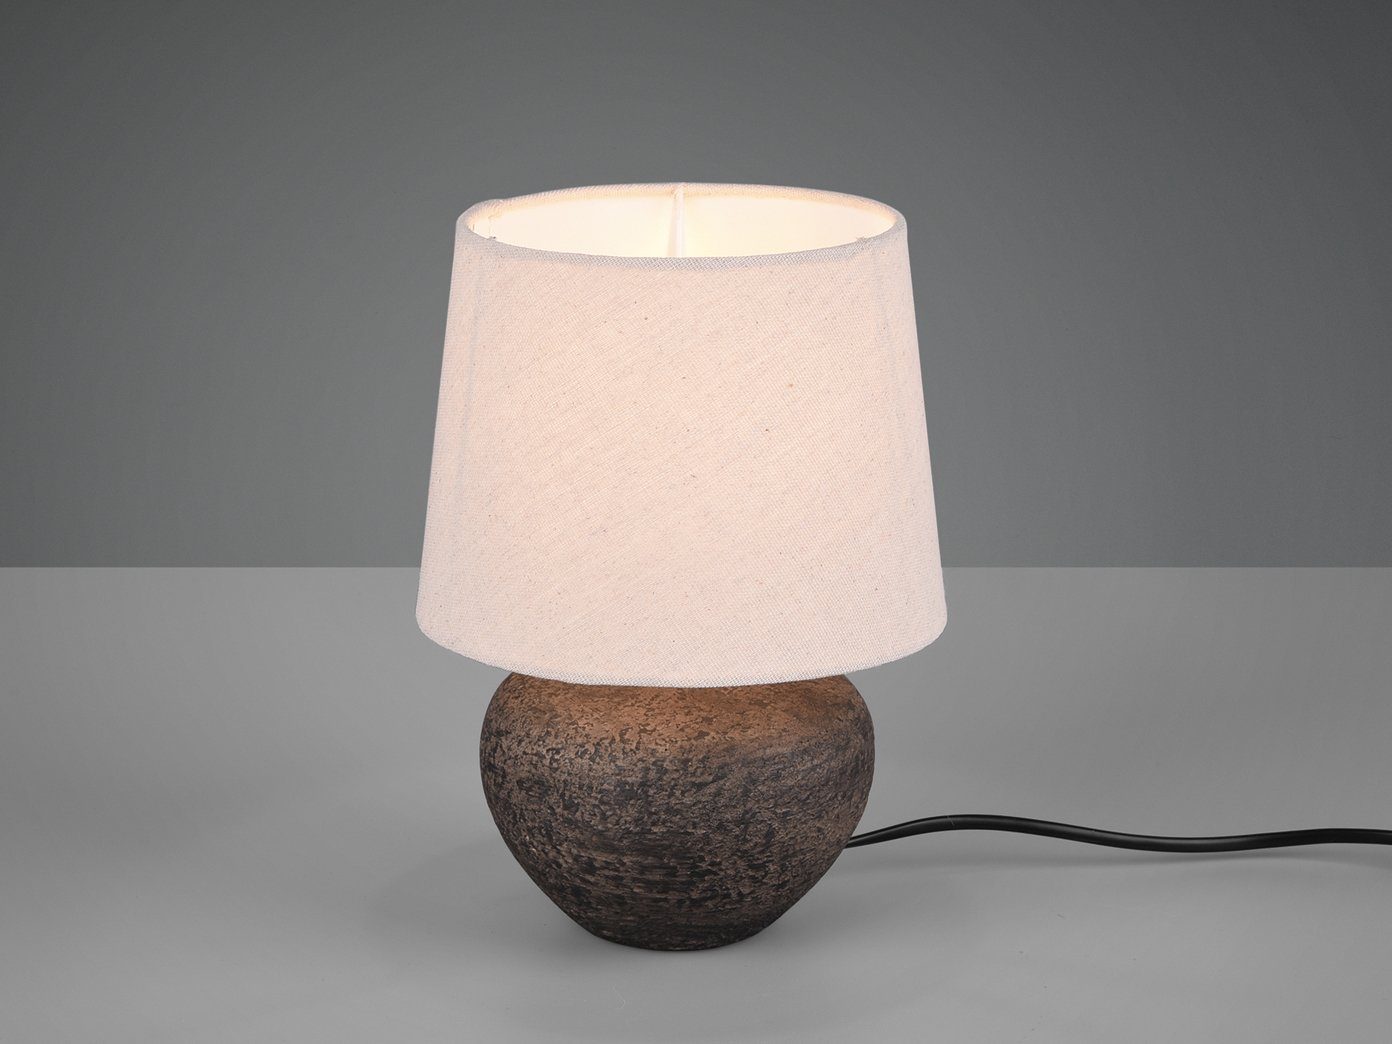 Muschel Design Schreib Tisch Lampe Wohn Ess Schlaf Zimmer Leuchte Nacht-Licht 